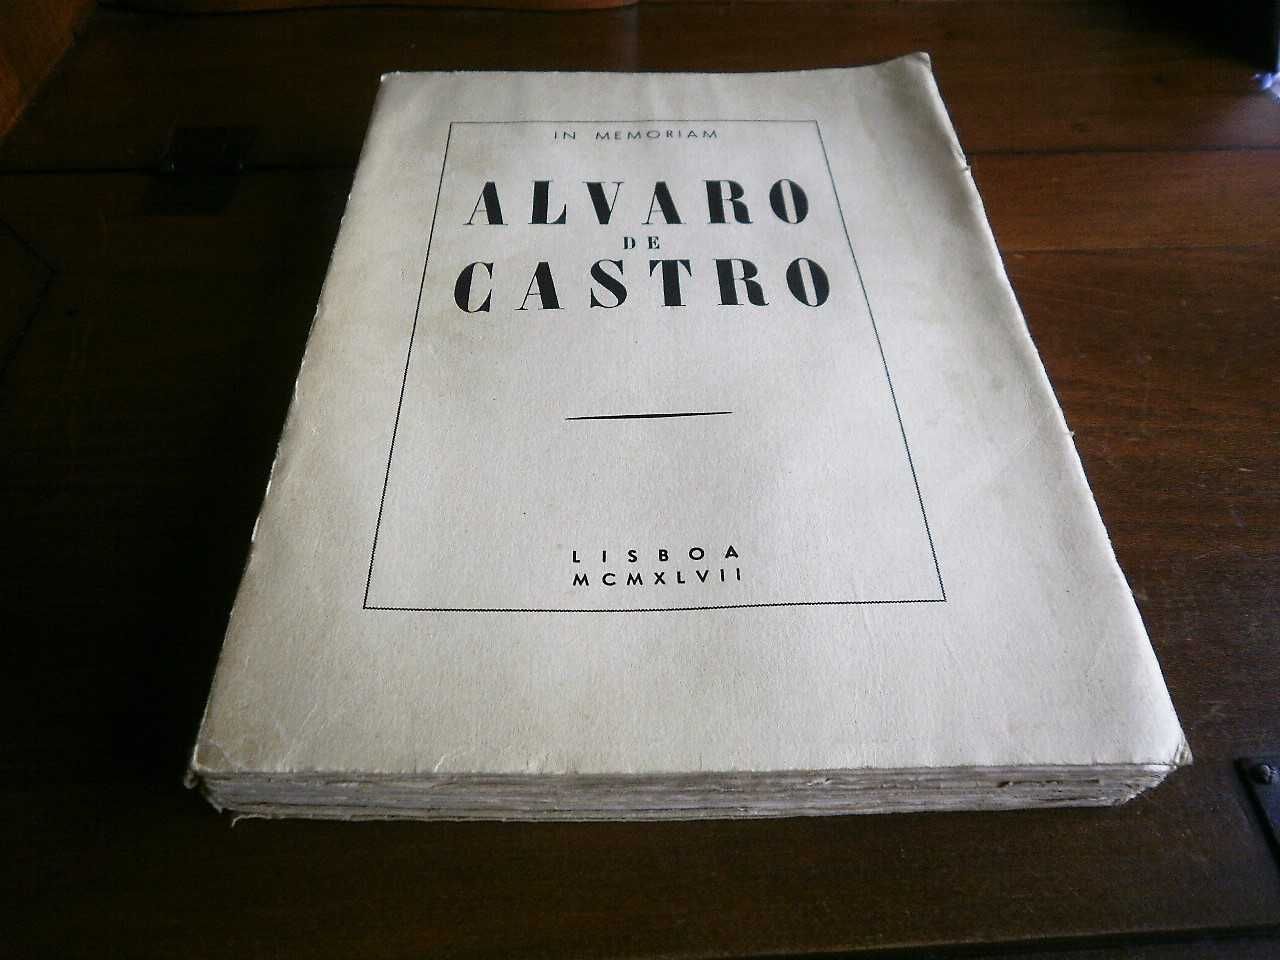 In Memoriam - Alvaro de Castro